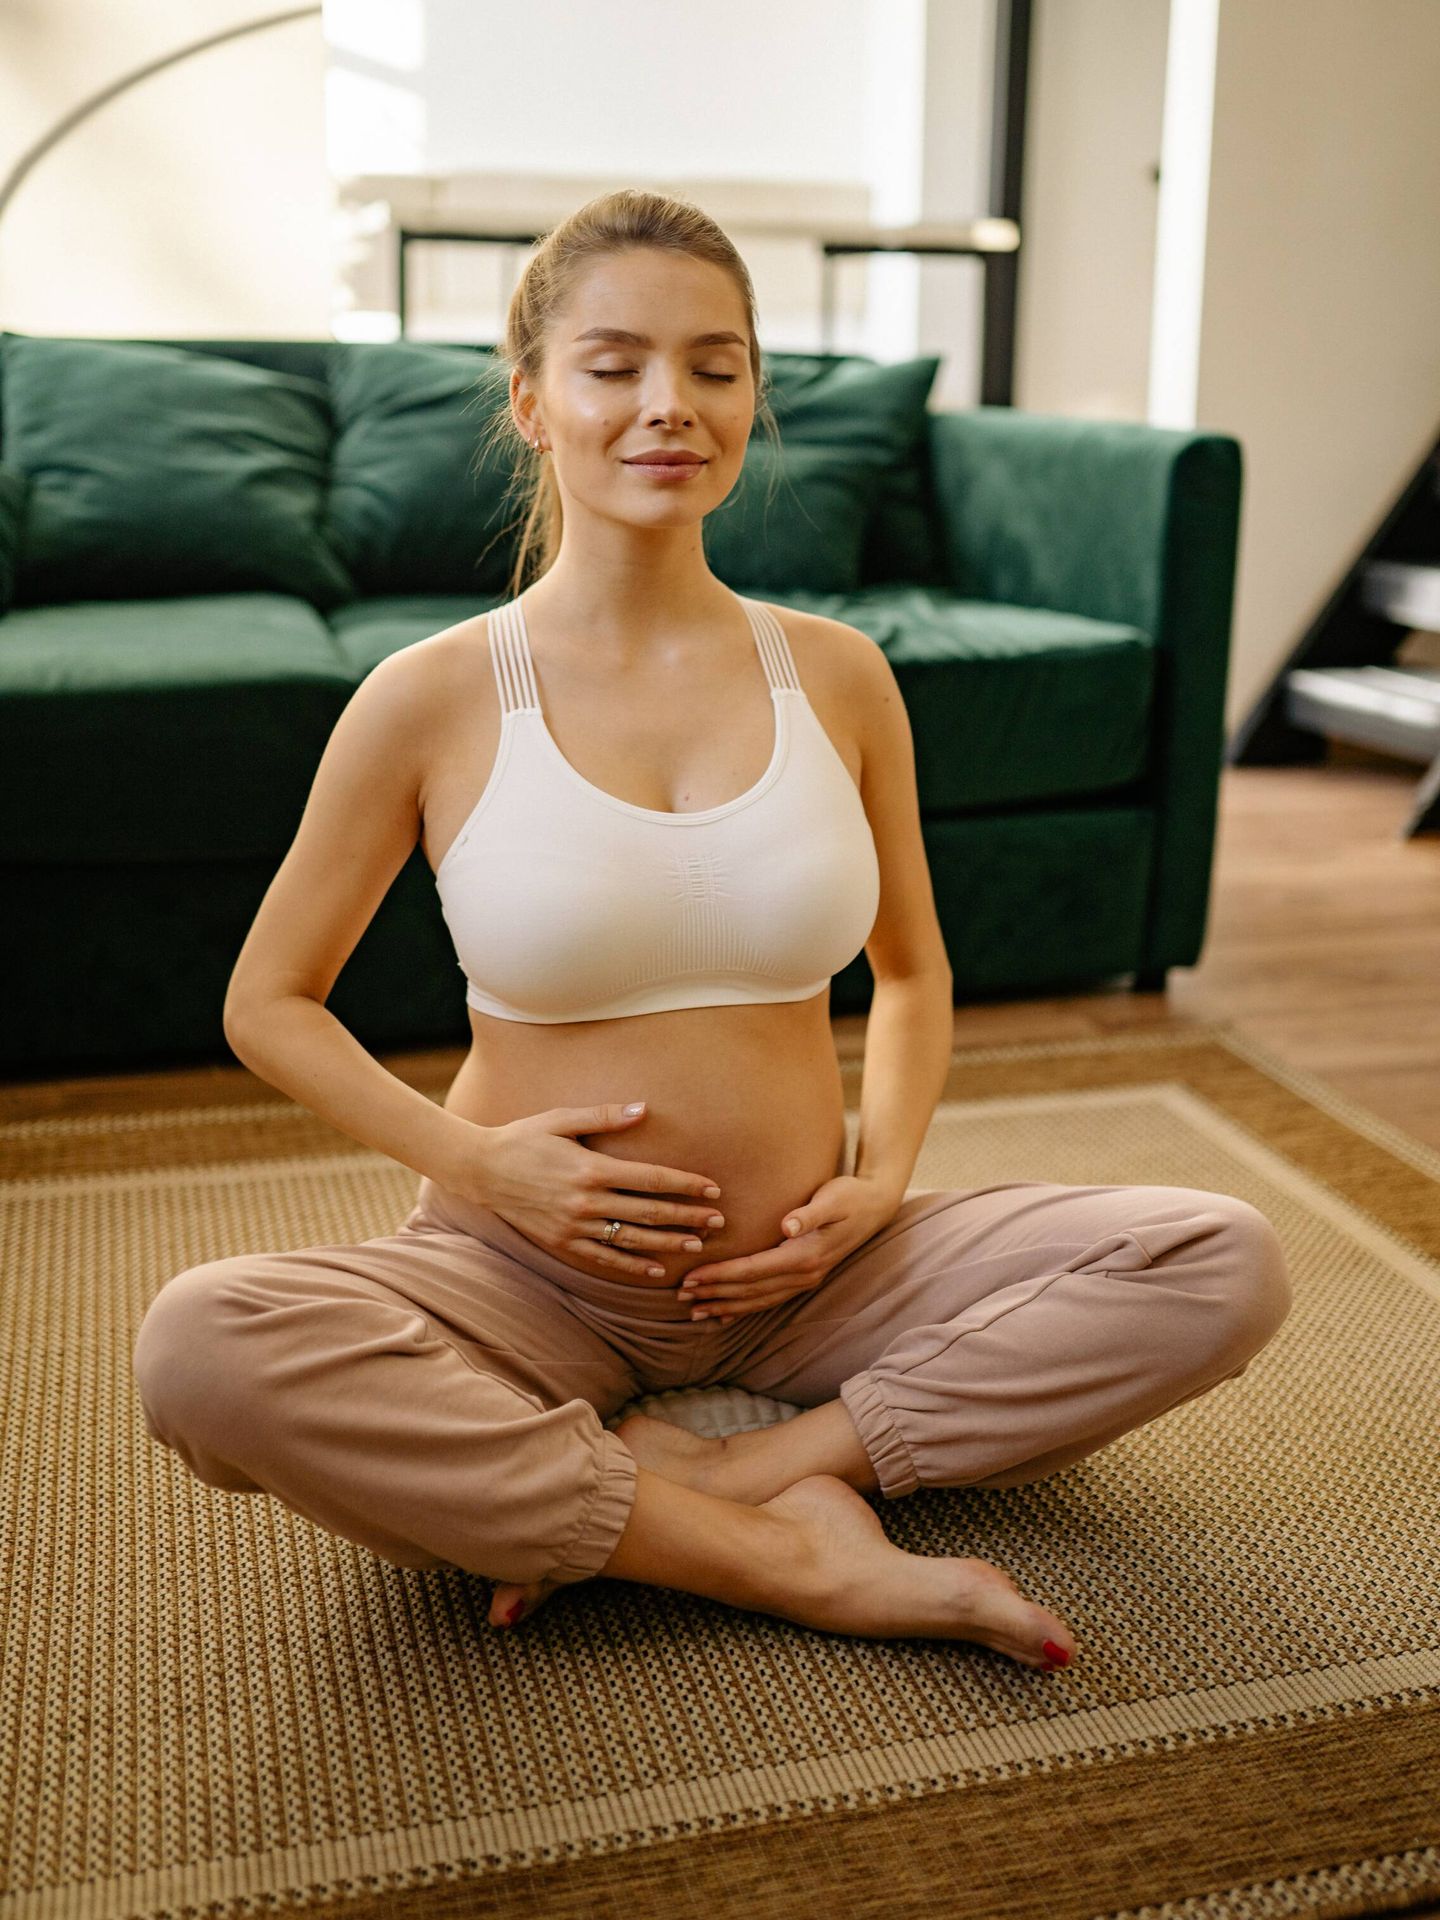 Beneficios del ejercicio durante el embarazo. (Pexels/Yan Krukau)